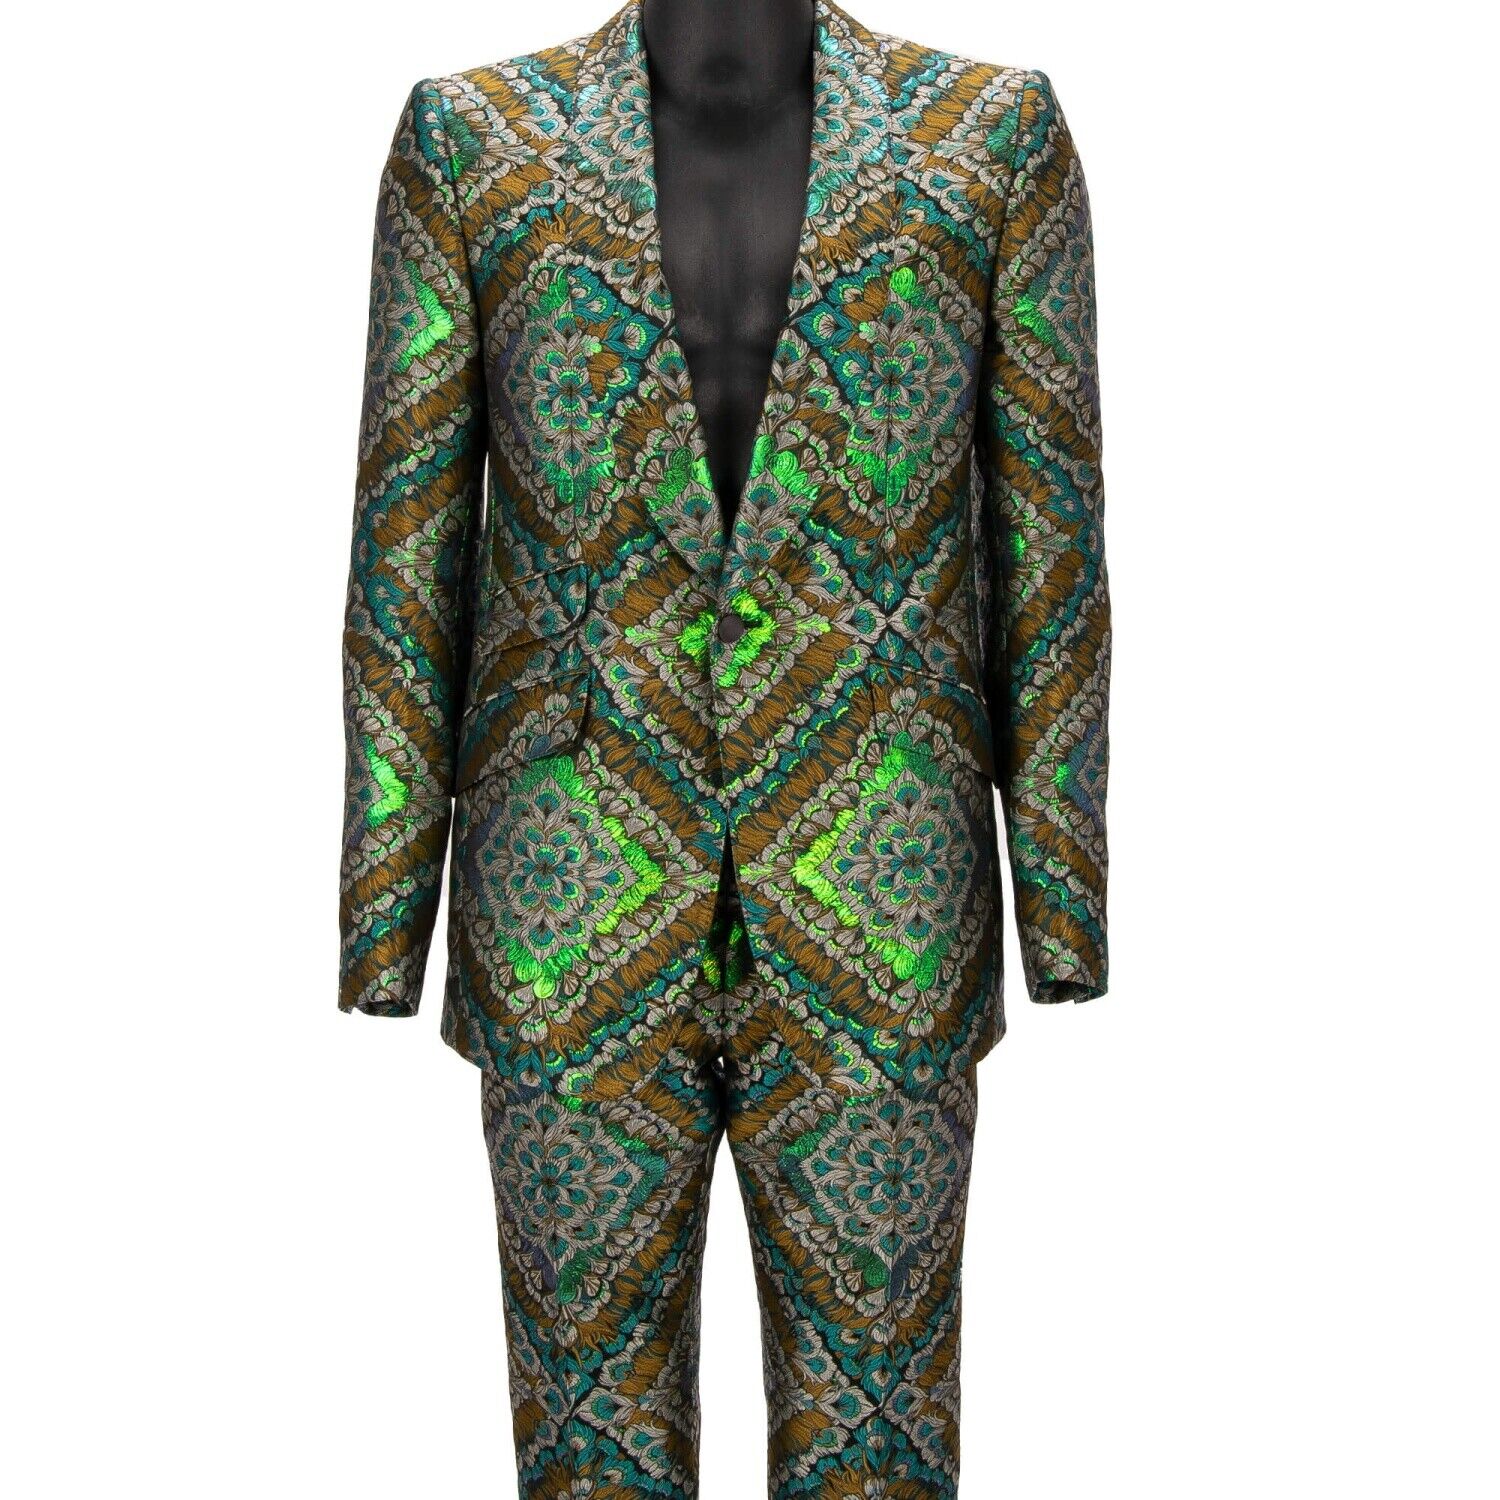 DOLCE & GABBANA Жаккардовый костюм-пиджак с павлином золотистого, зеленого, синего цвета 48 38 M 12710